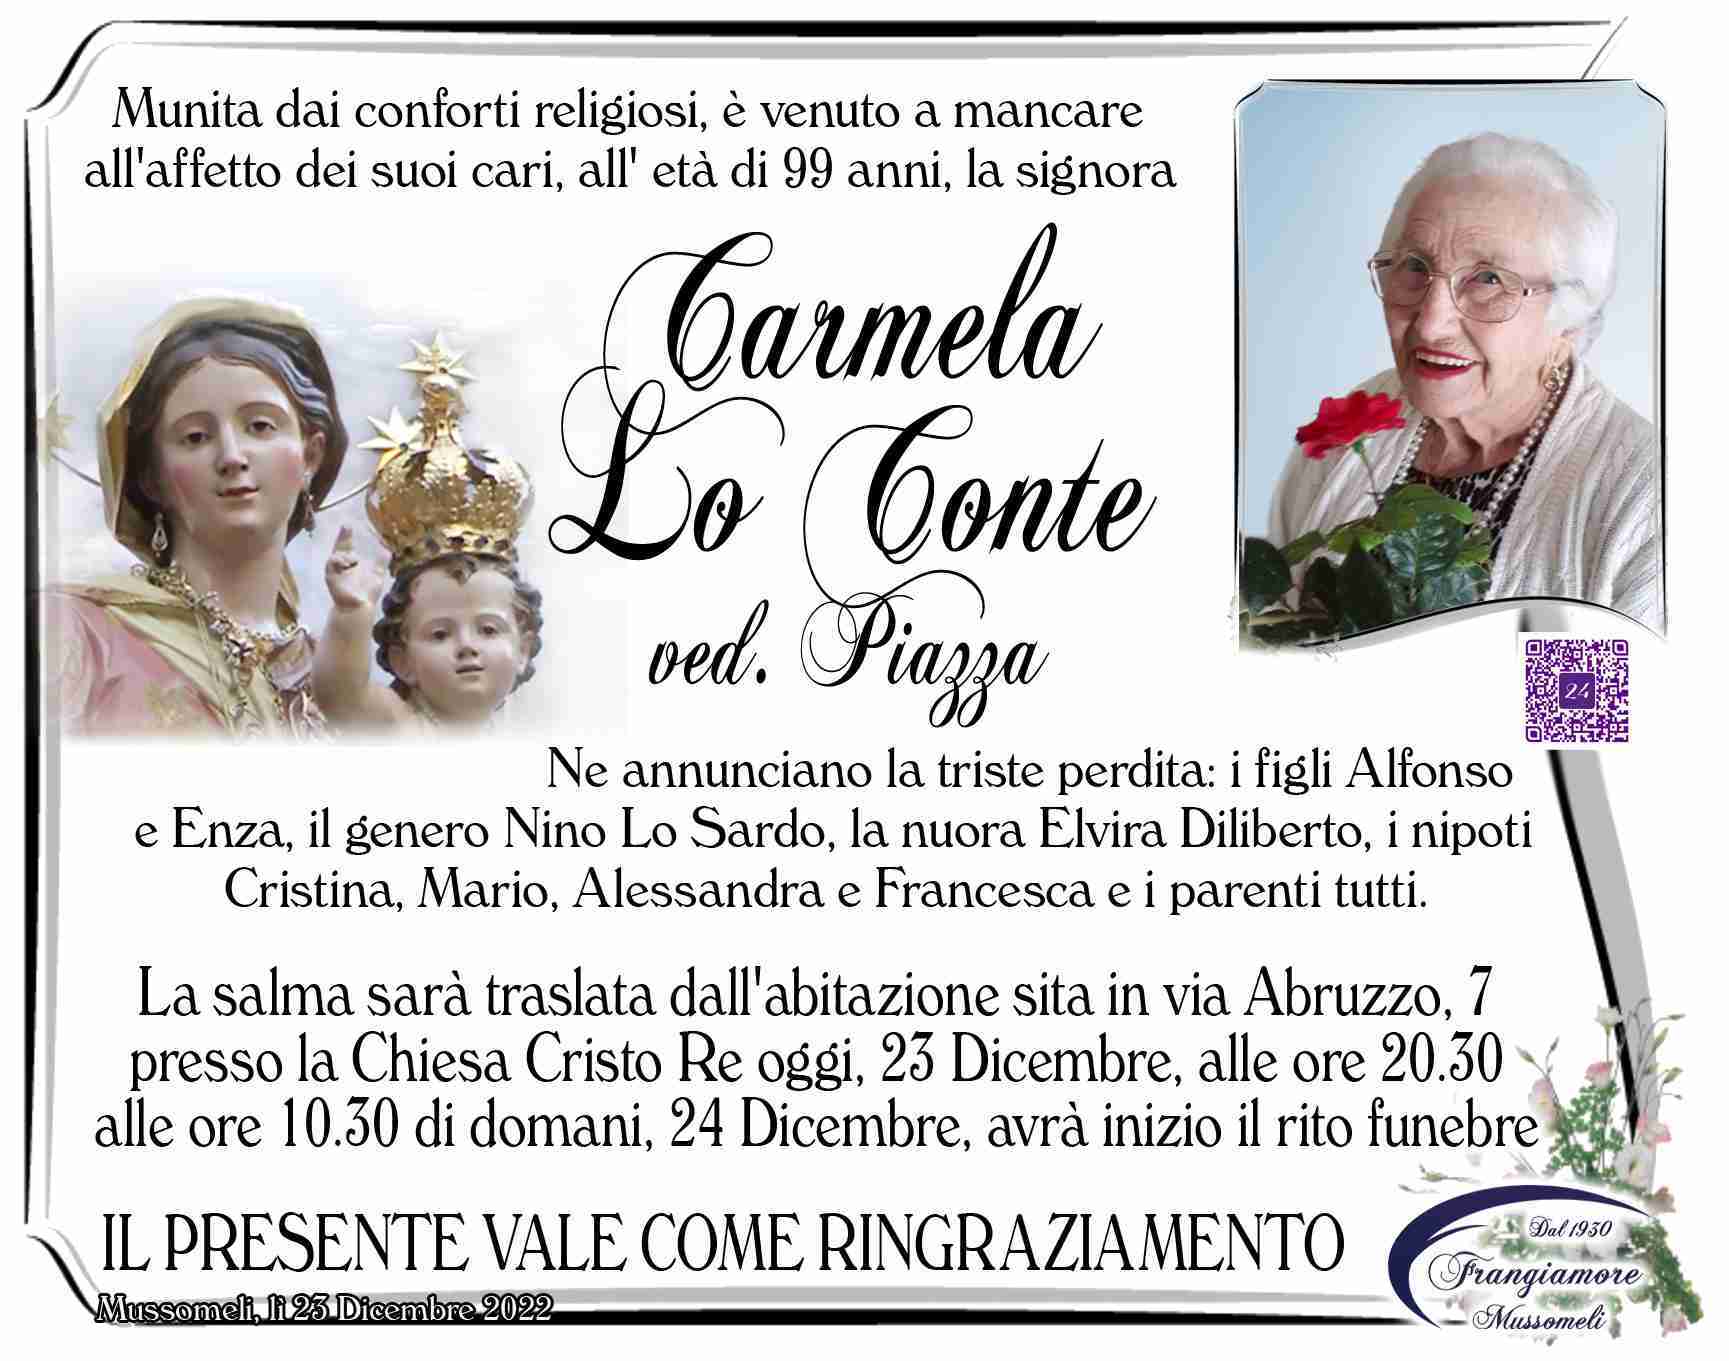 Carmela Lo Conte